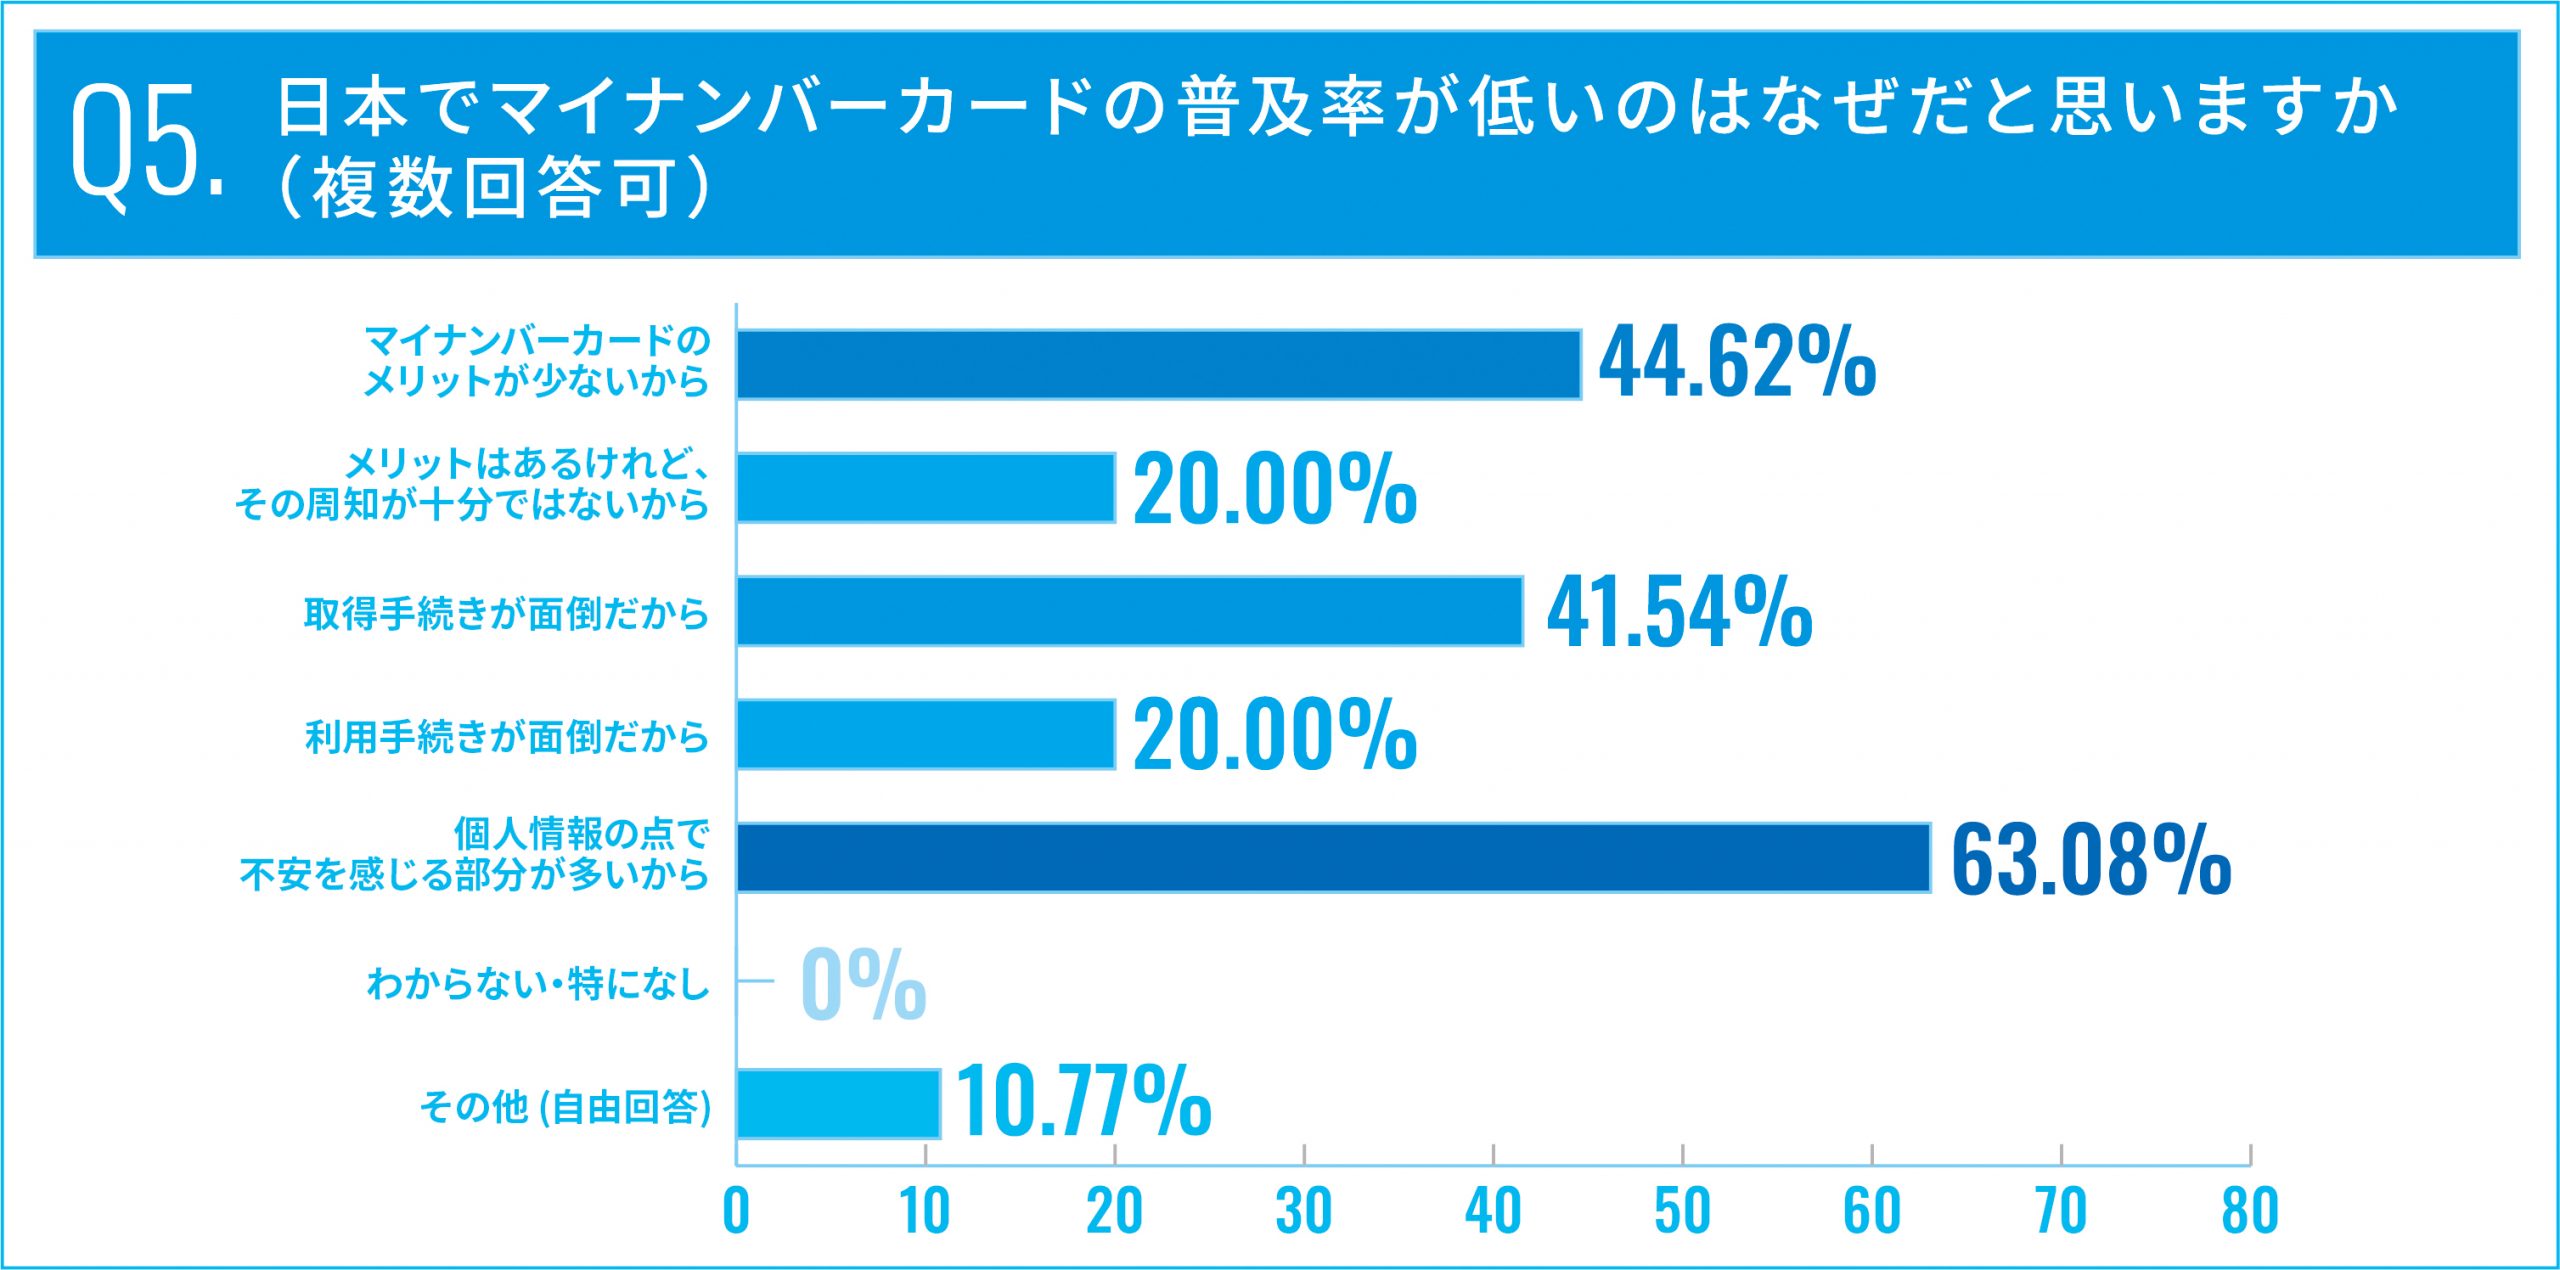 Q5.日本でマイナンバーカードの普及率が低いのはなぜだと思いますか（複数回答可）